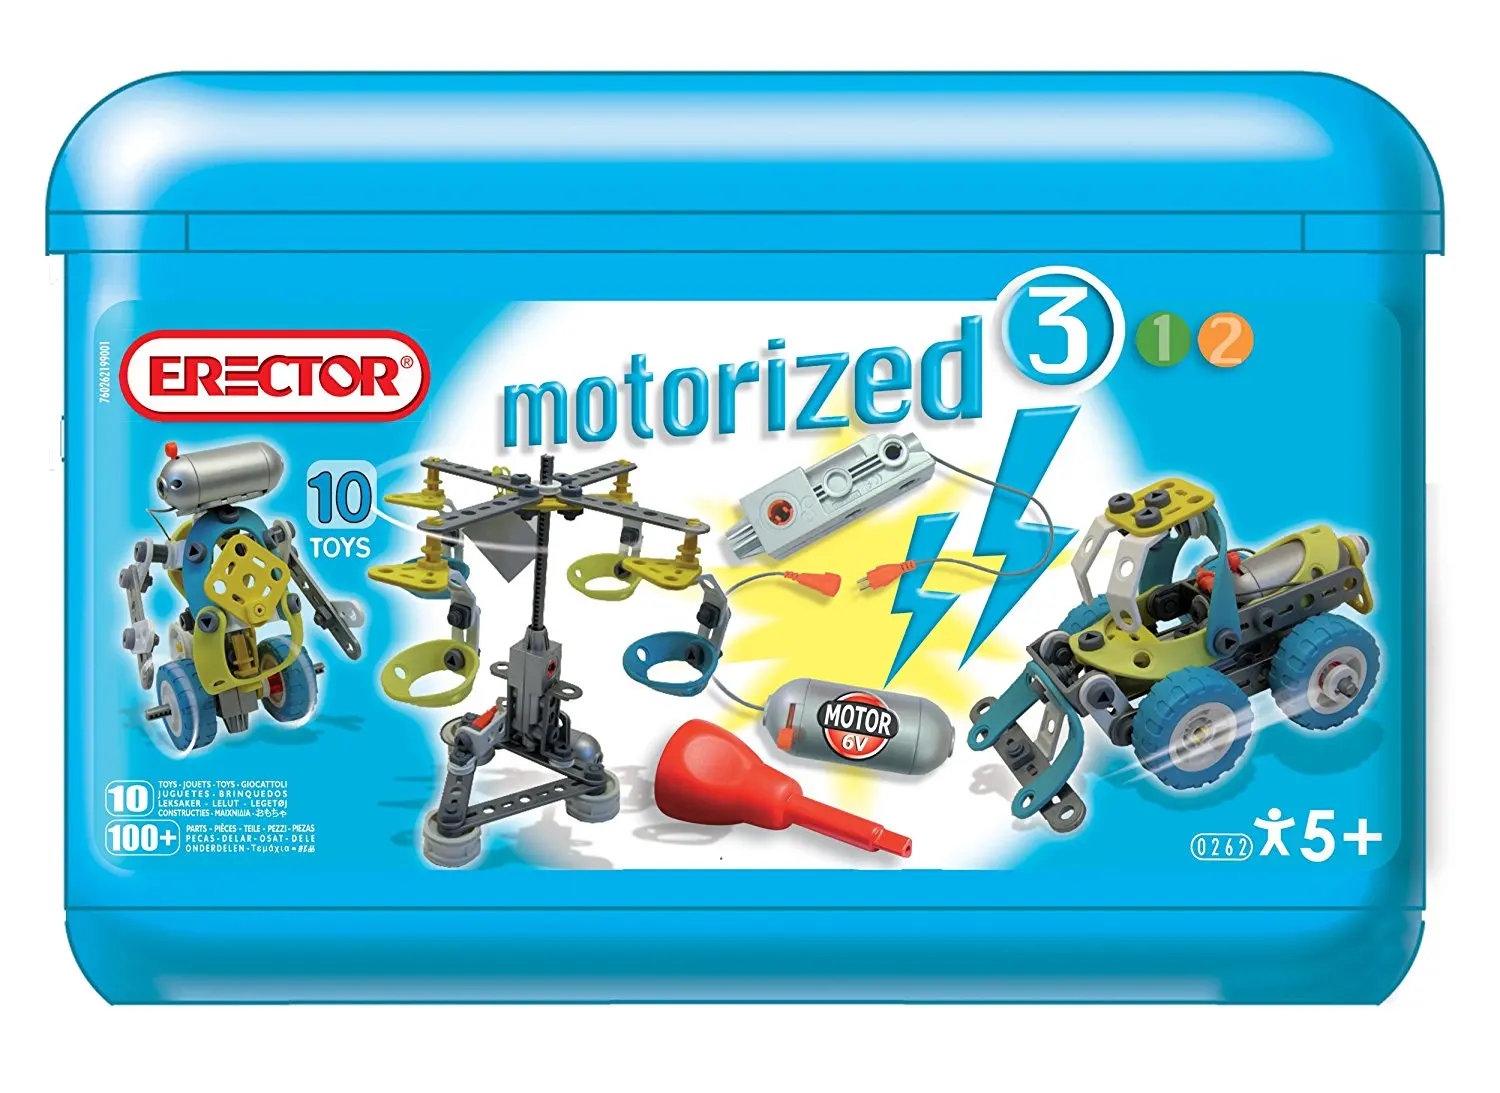 motorized erector set